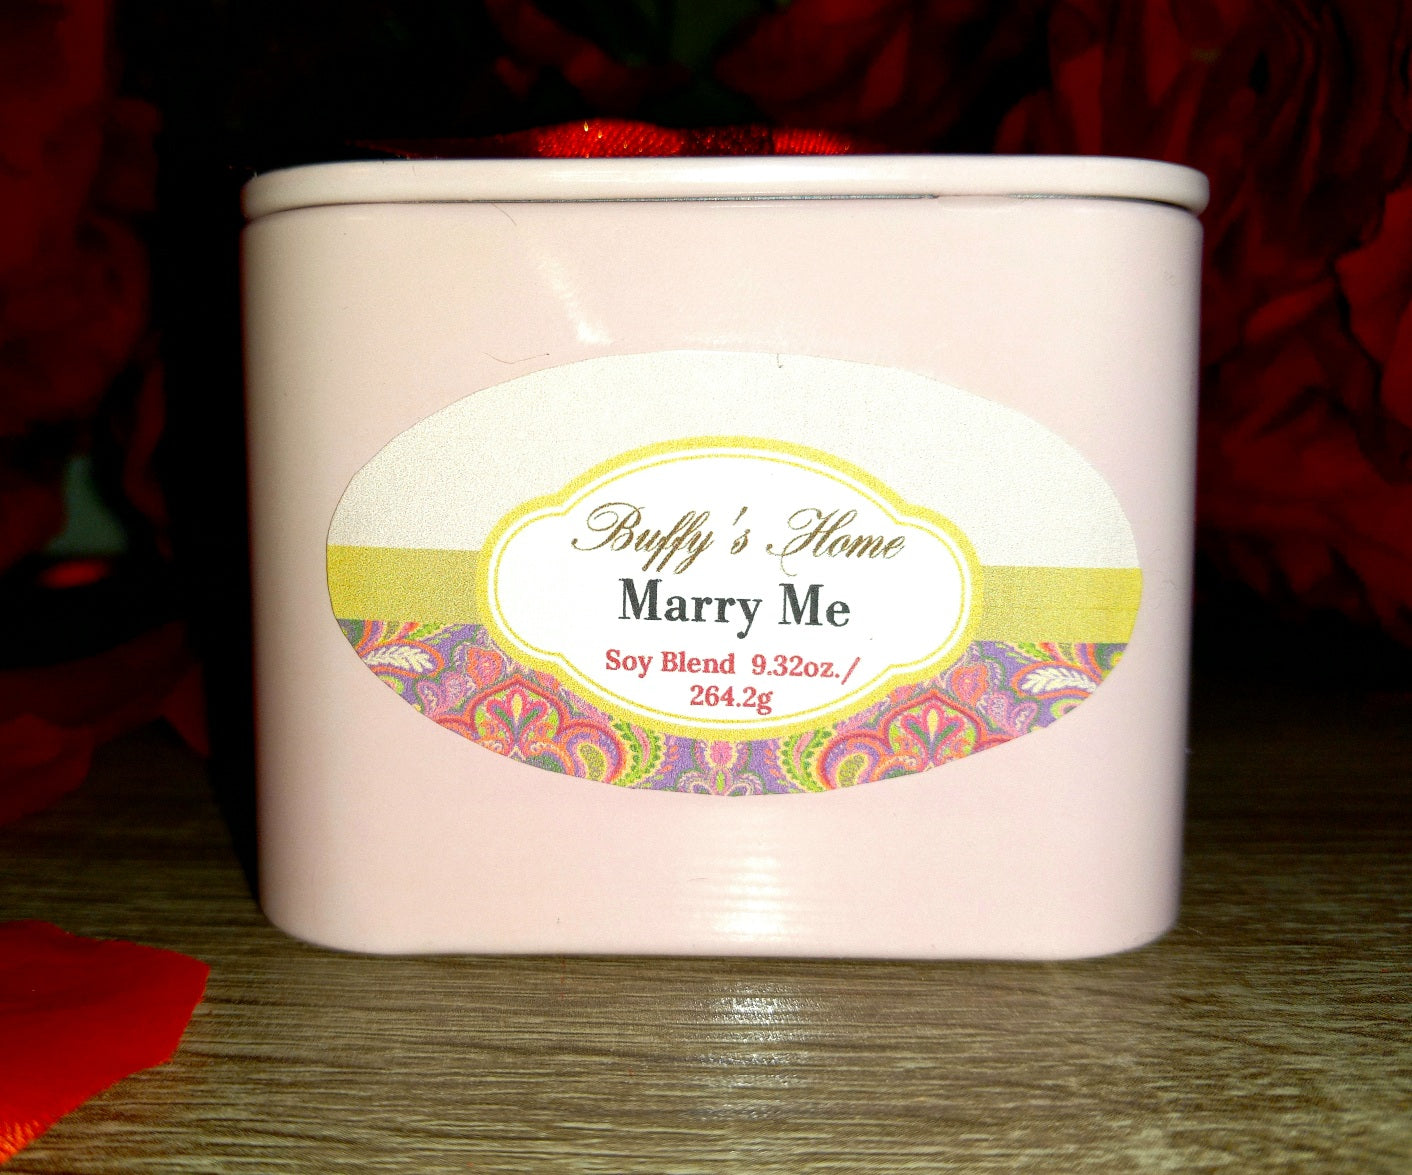 "Marry Me" 8oz Designer Frangrance Candle